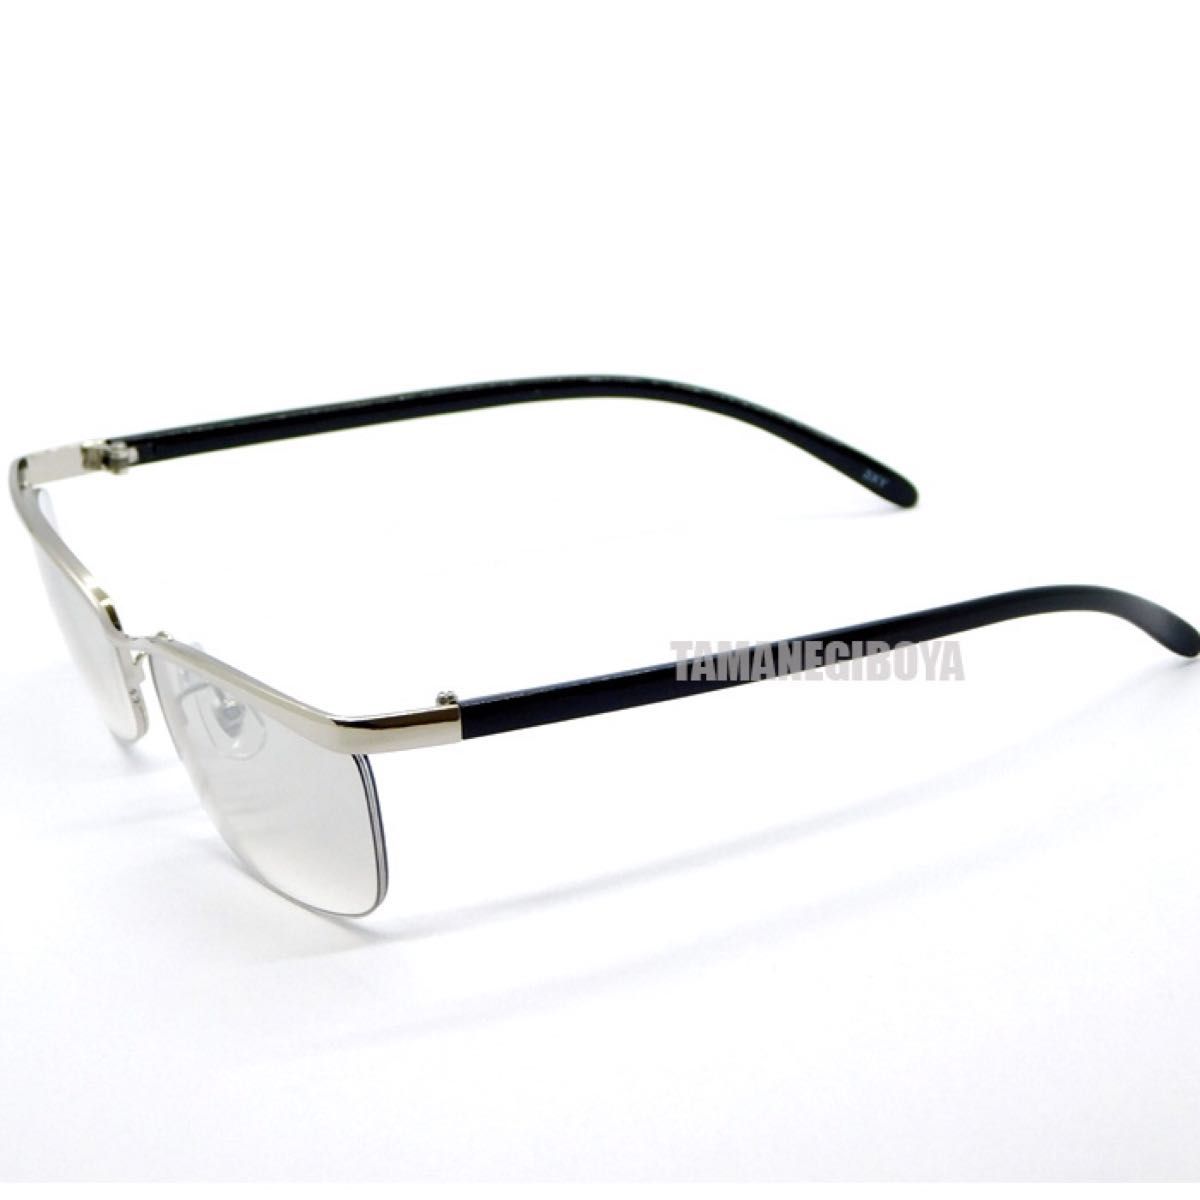 オラオラ系 ハーフリム サングラス メンズ UVカット ナイロール型 シャープ 伊達眼鏡 伊達メガネ チョイ悪系 いかつい 新品